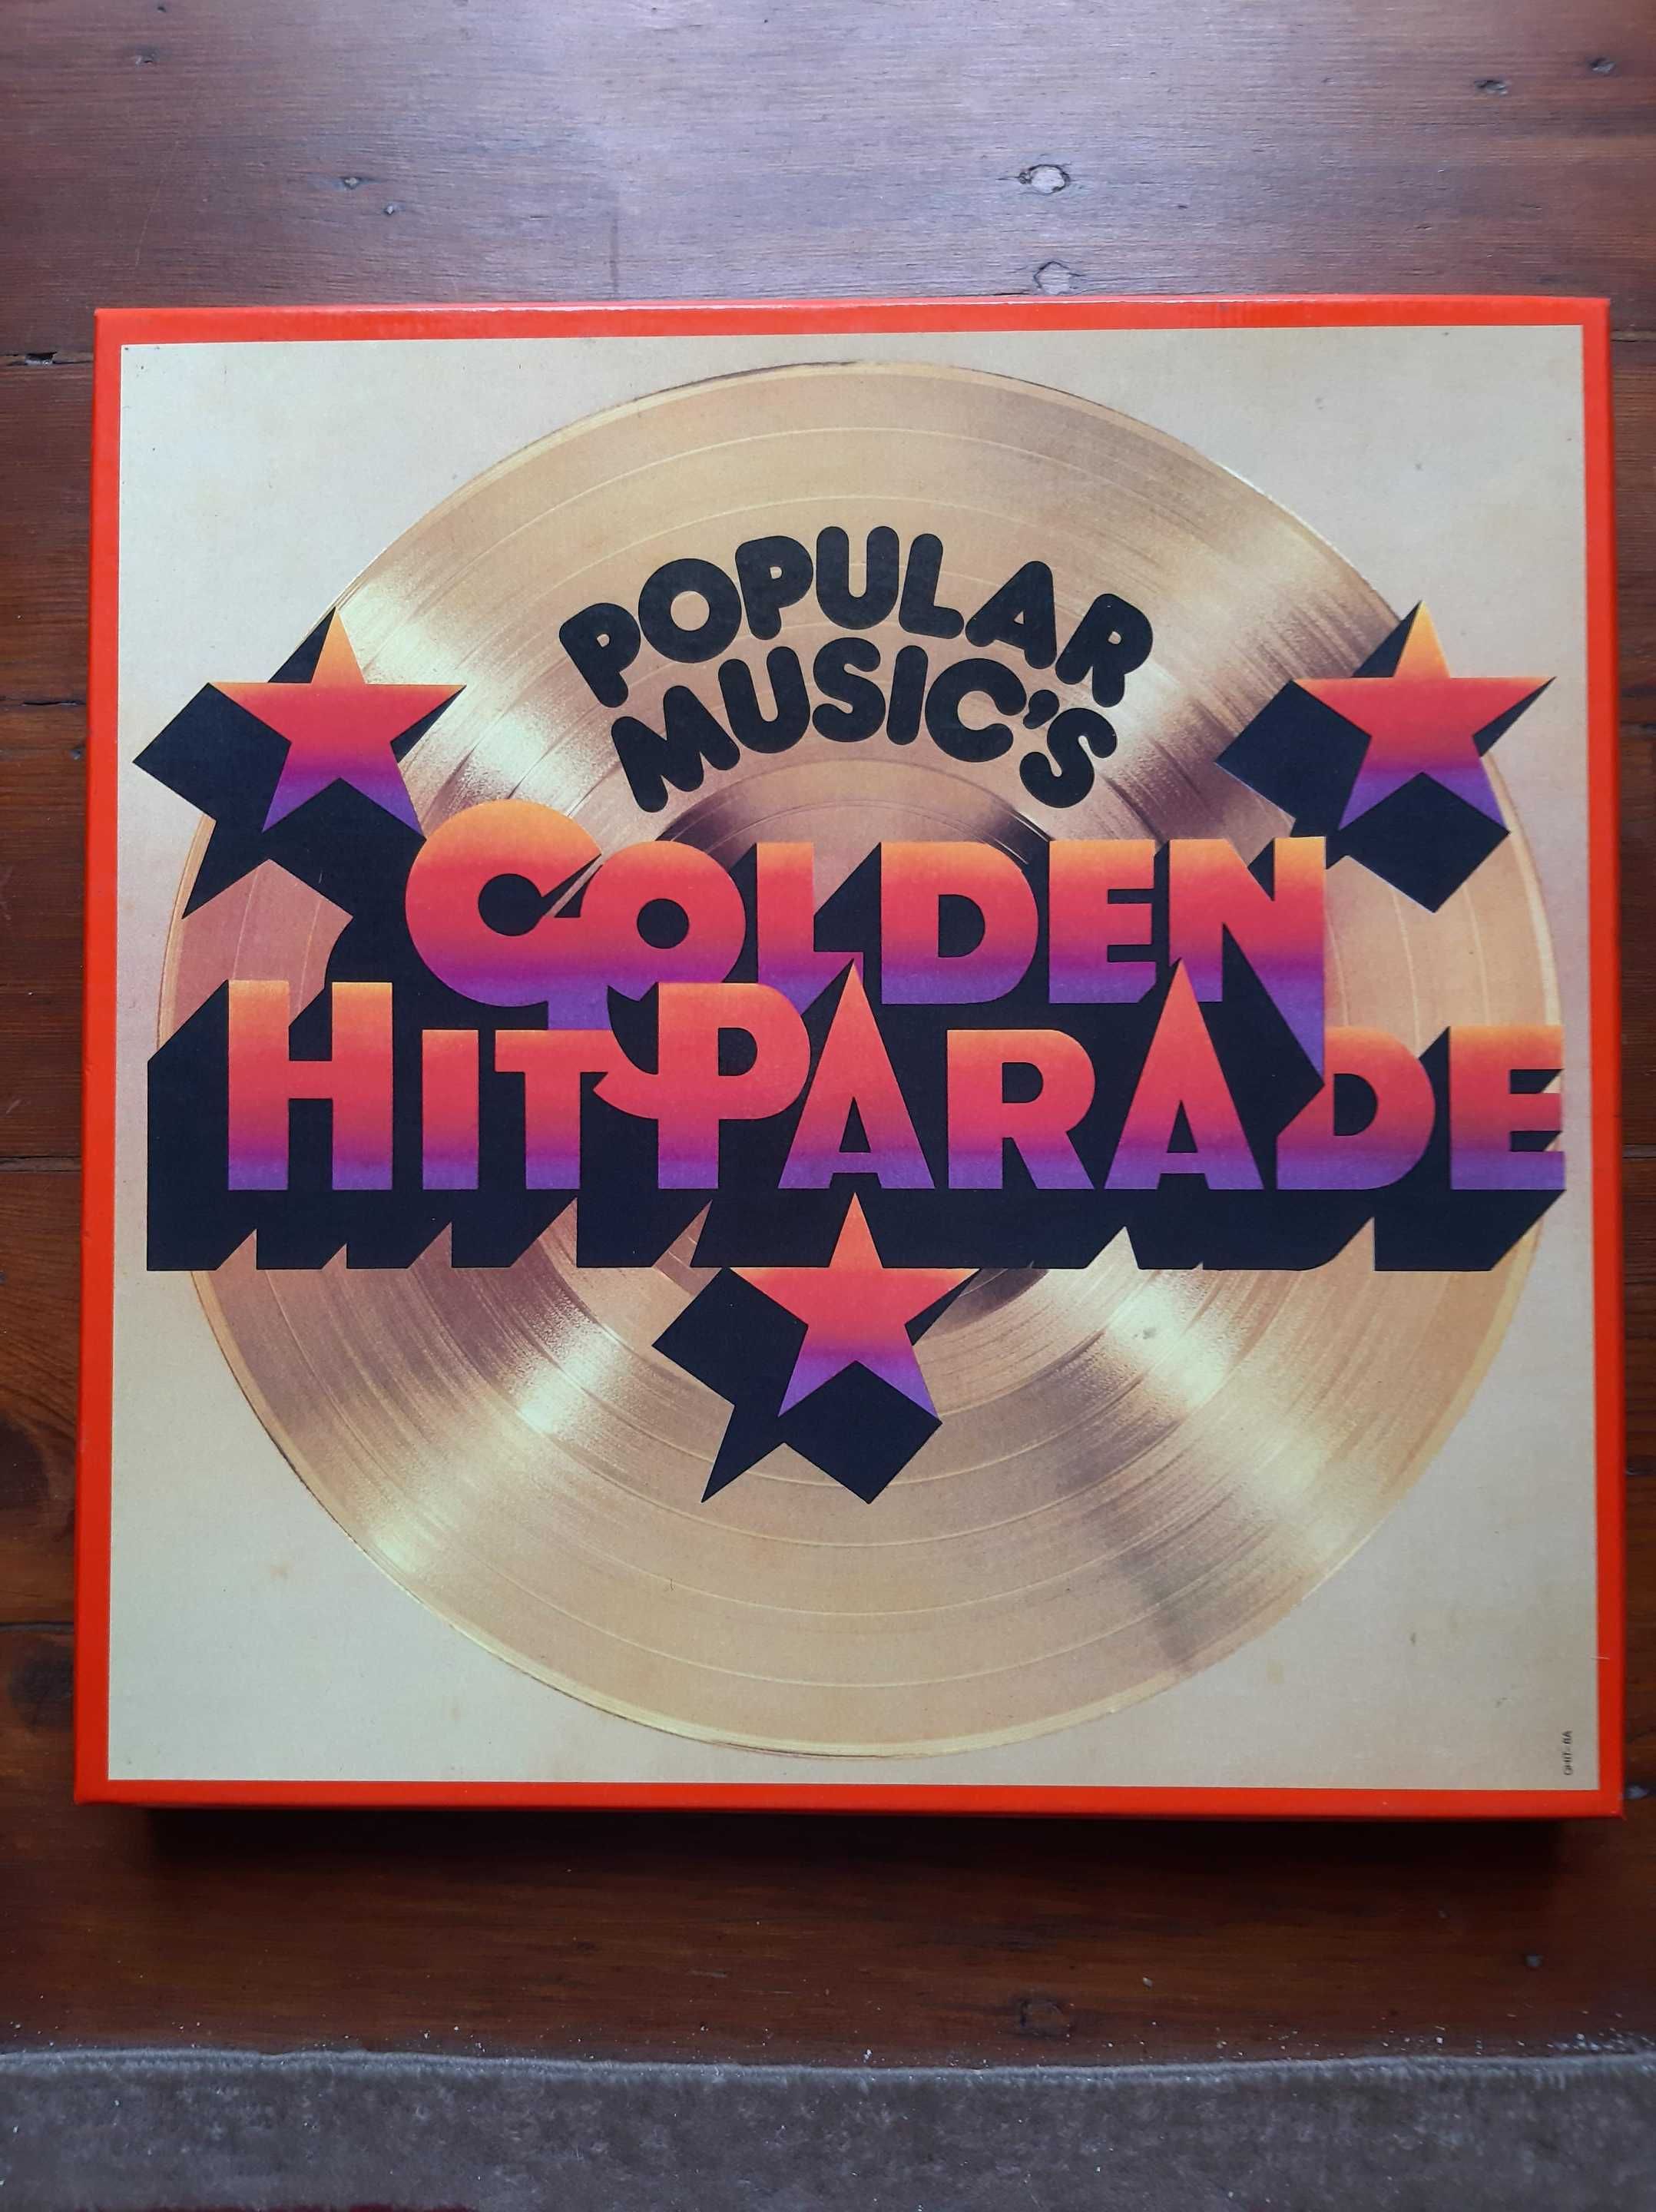 Coleção de Discos GOLDEN HITPARADE